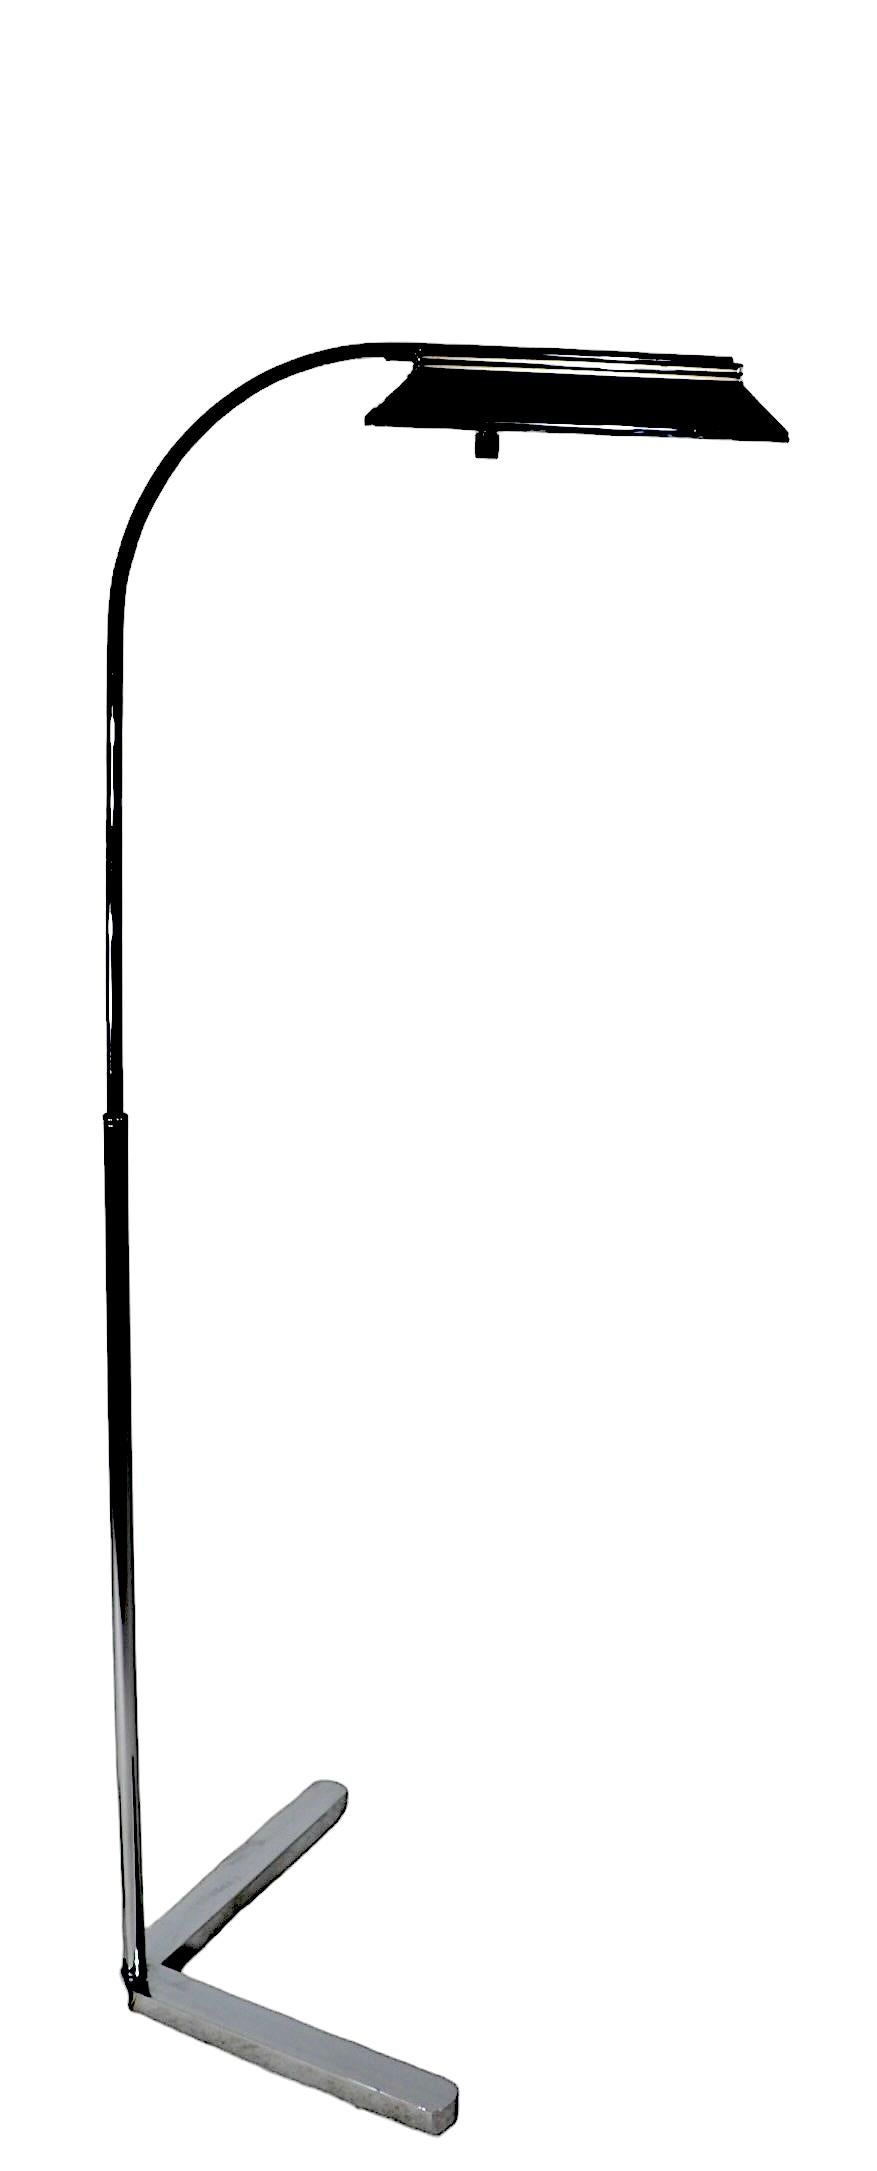 Lampadaire postmoderne de Casella, circa 1970/1980. La lampe est dotée d'un bras pivotant et est réglable en hauteur (40-52 pouces). Cet exemplaire est en très bon état, propre, original et fonctionnel. Les marques et éraflures visibles sur la base